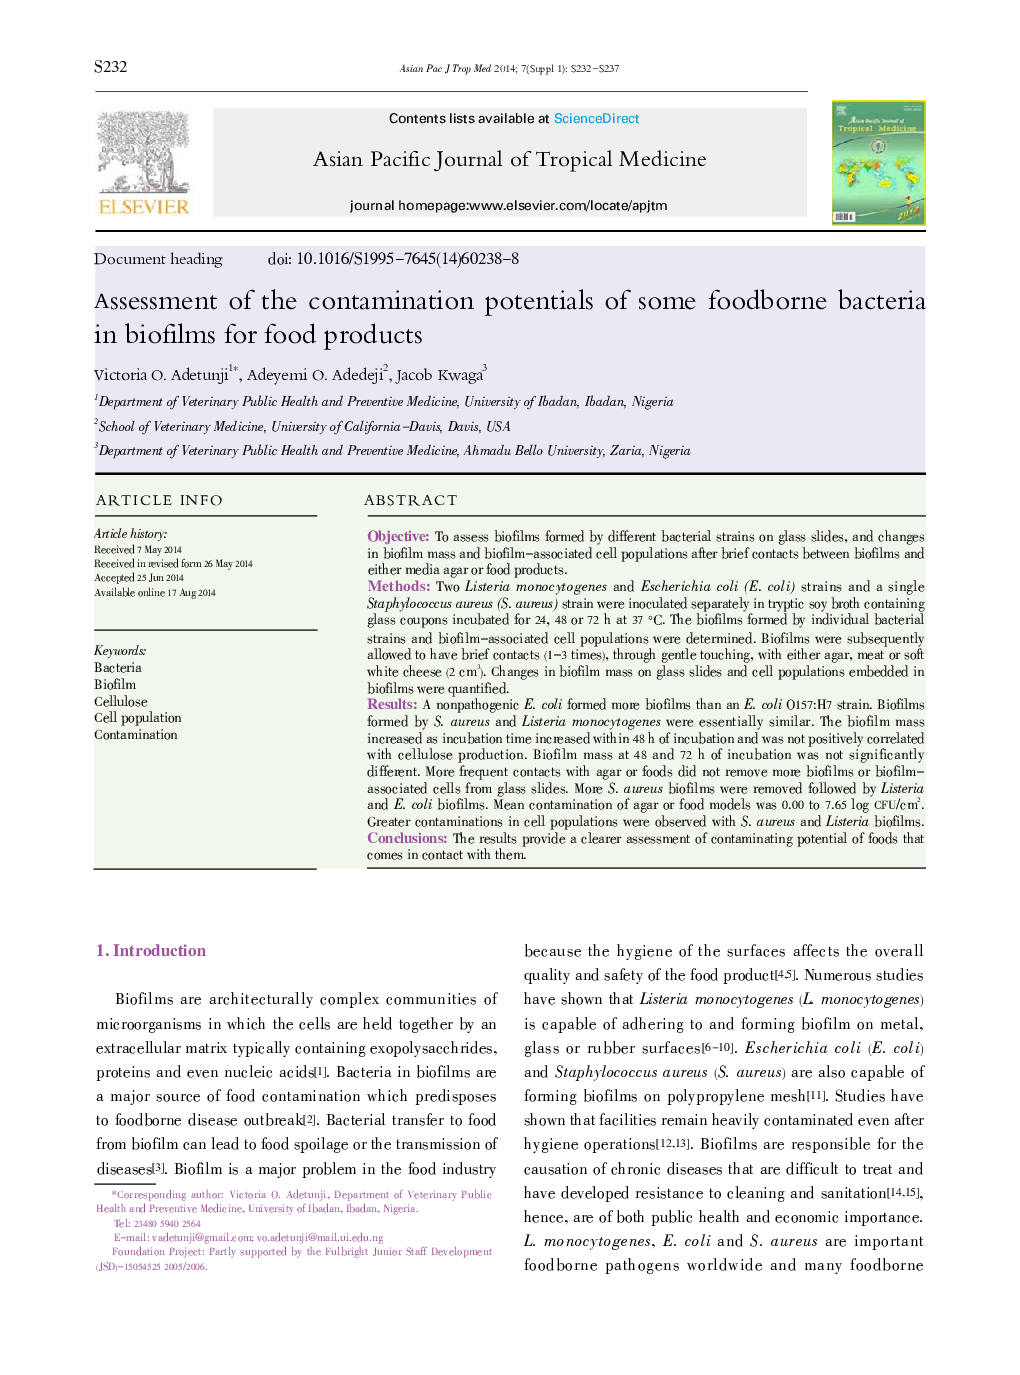 ارزیابی پتانسیل های آلودگی برخی از باکتری های غذایی در بیوفیلم ها برای محصولات غذایی 